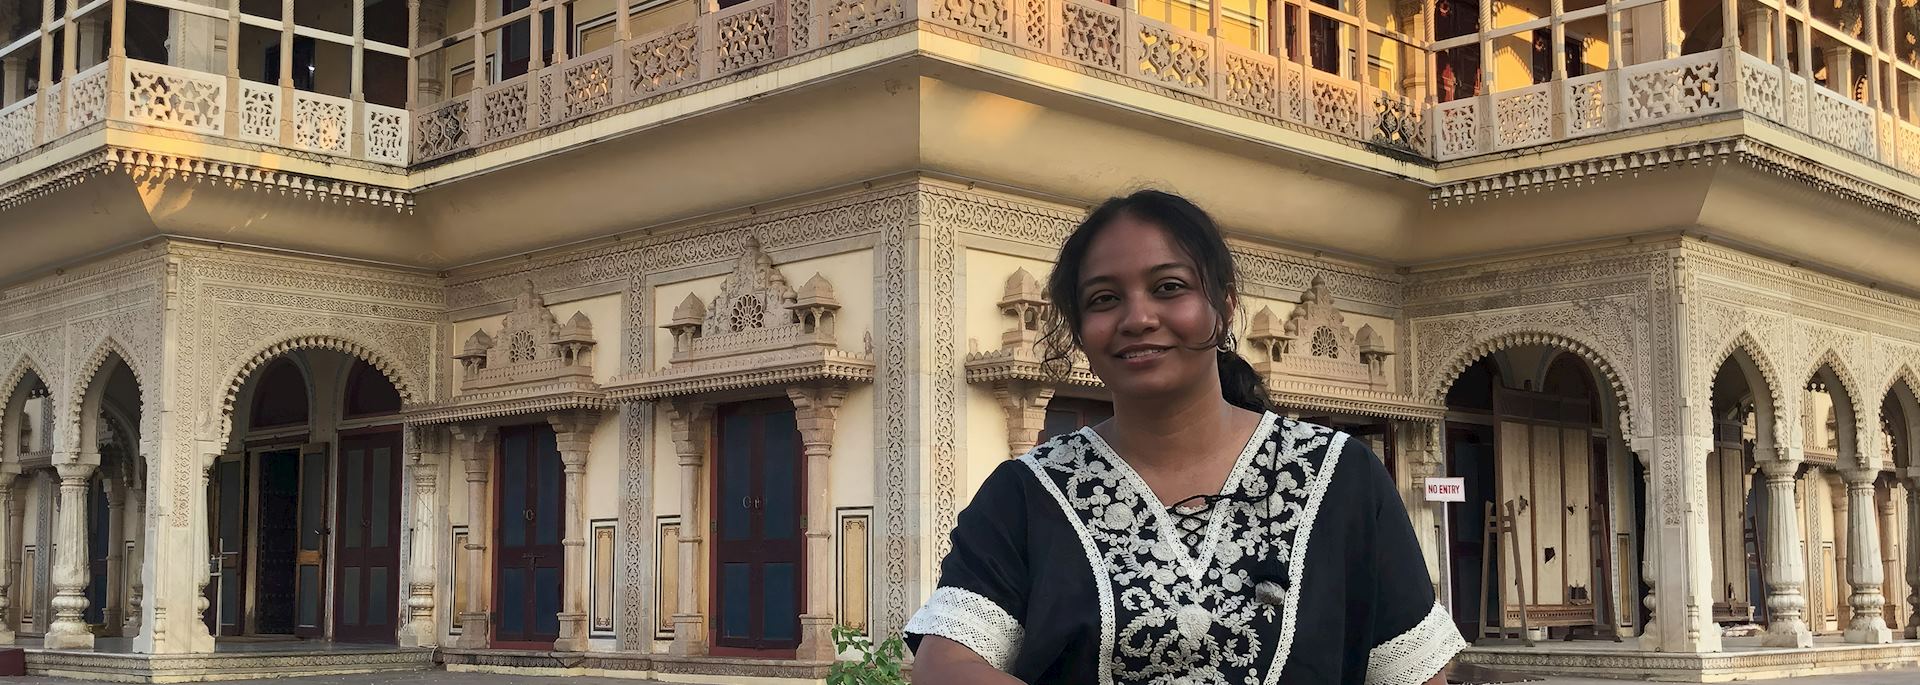 Anupama at the Amber Palace, Jaipur, India